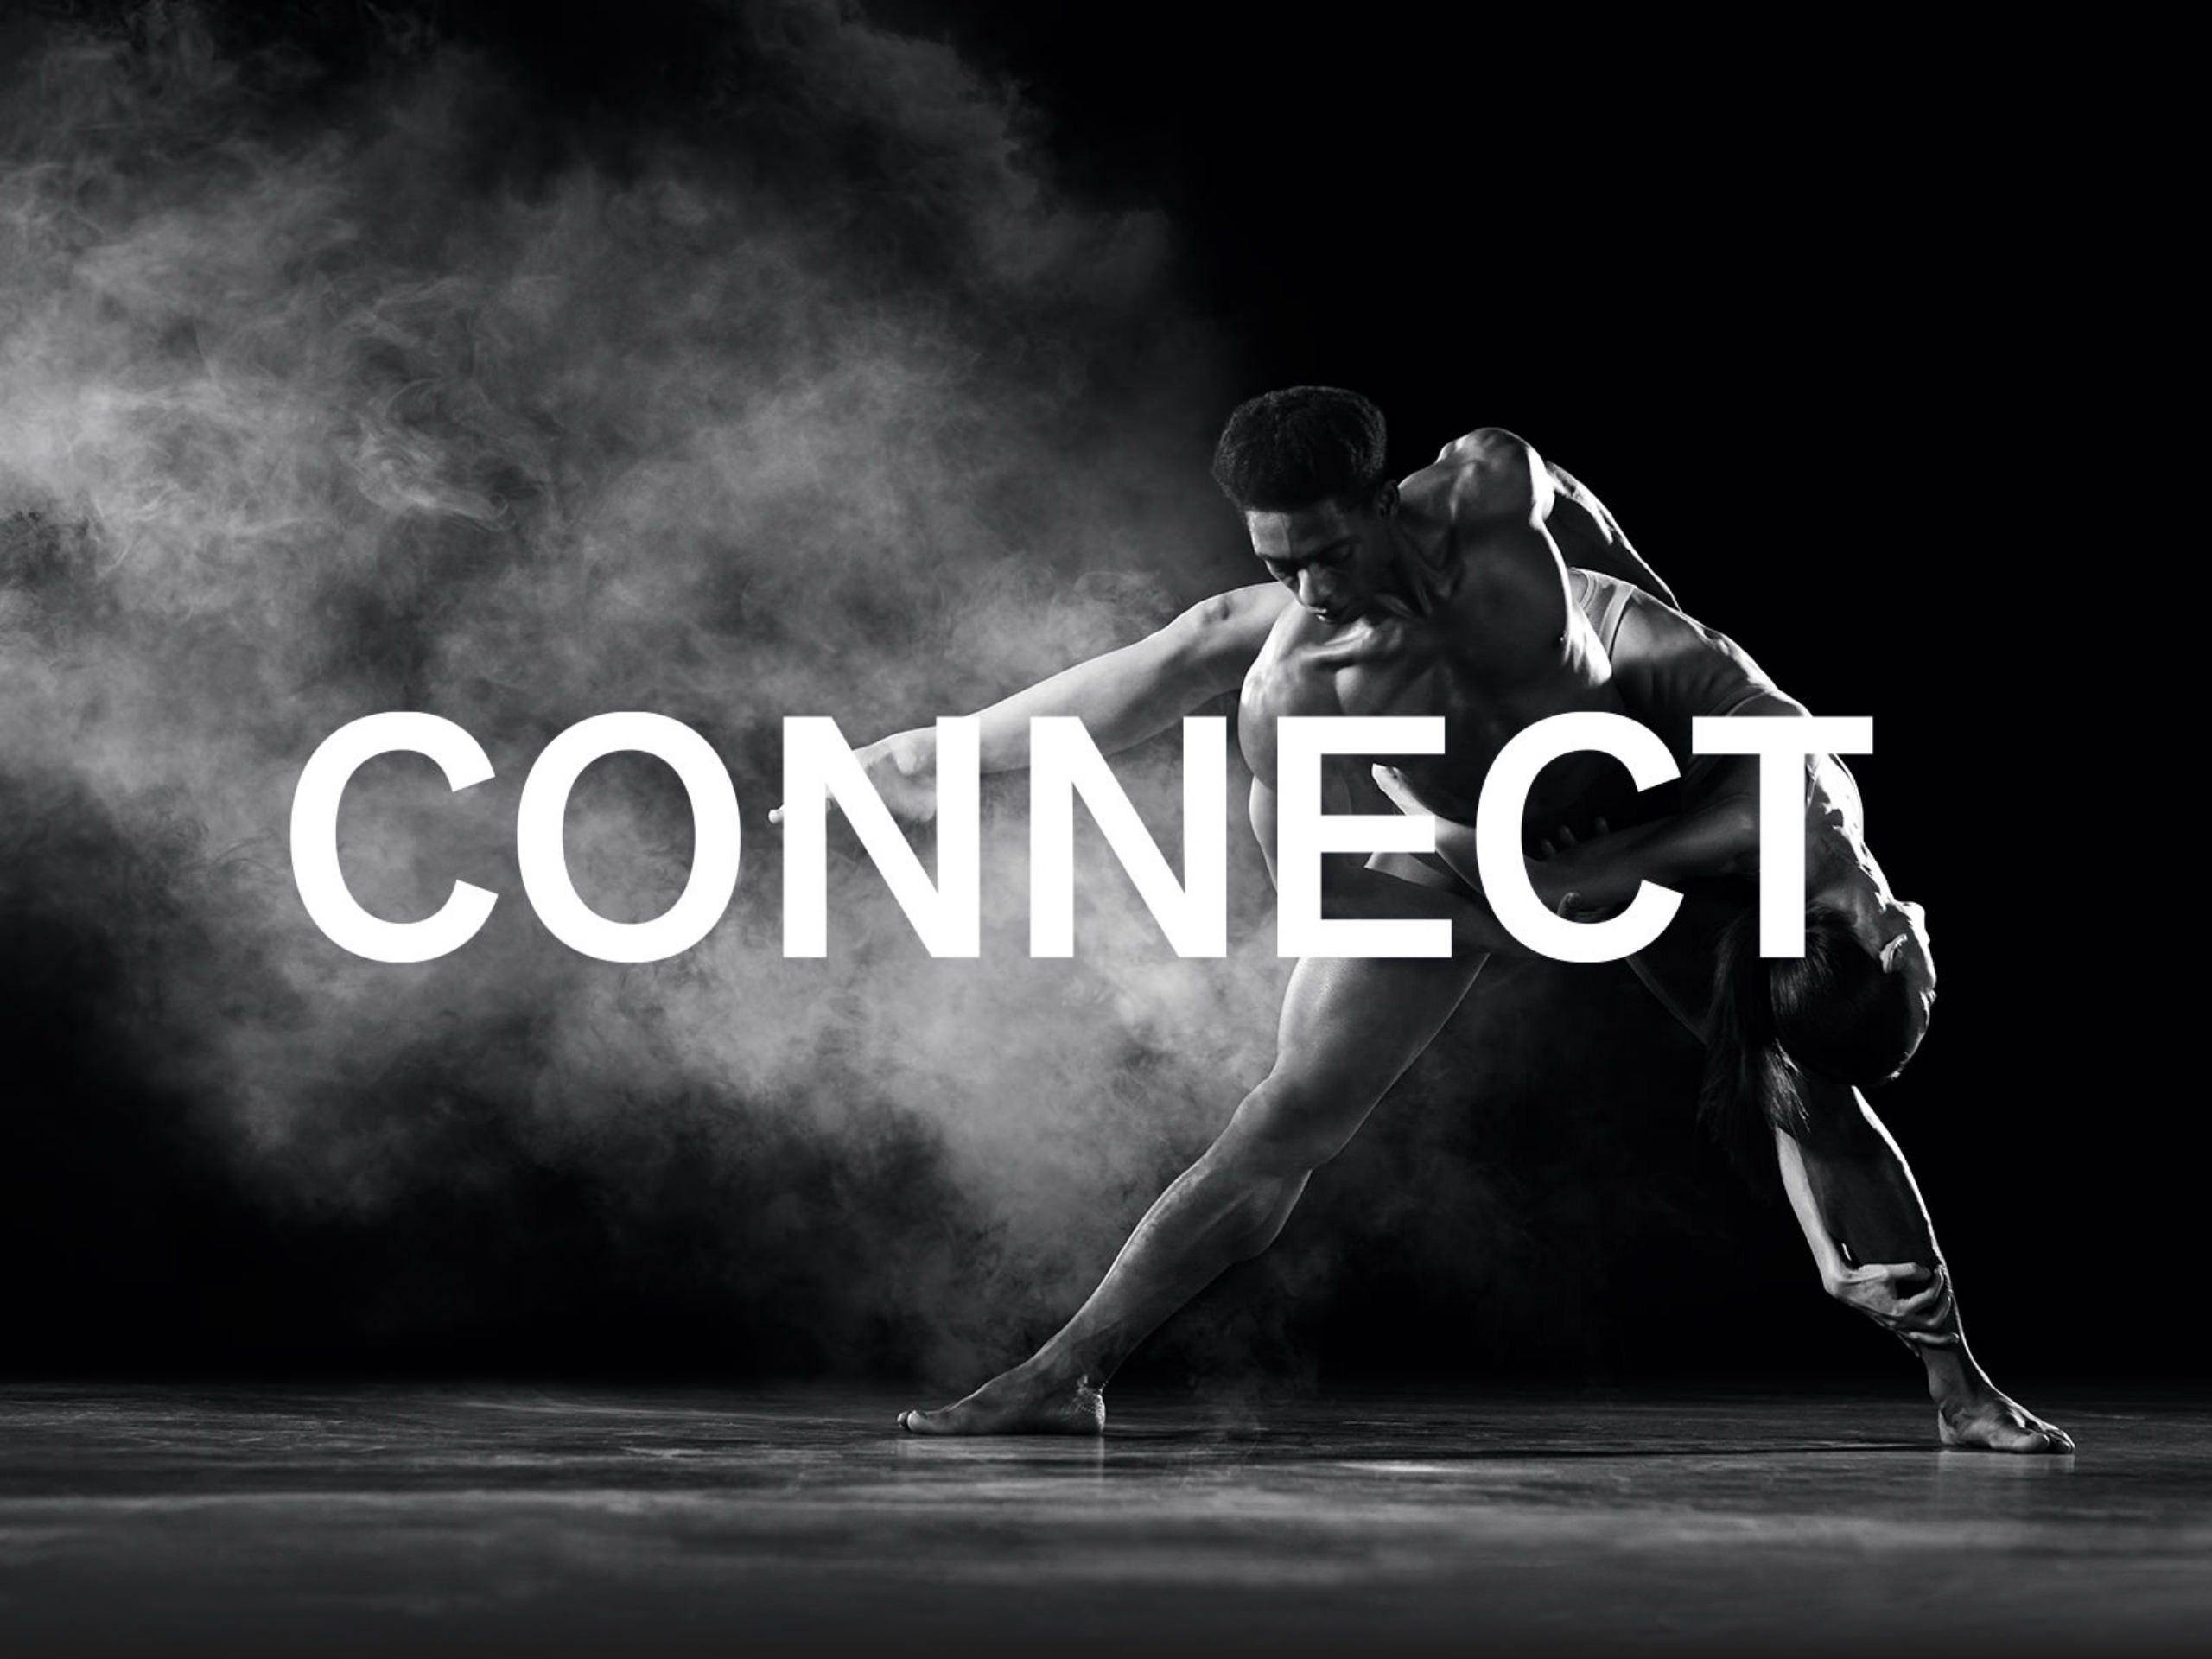 De choreografieën die de twee dansers creëerden voor dit campagneconcept leverden prachtige beelden op